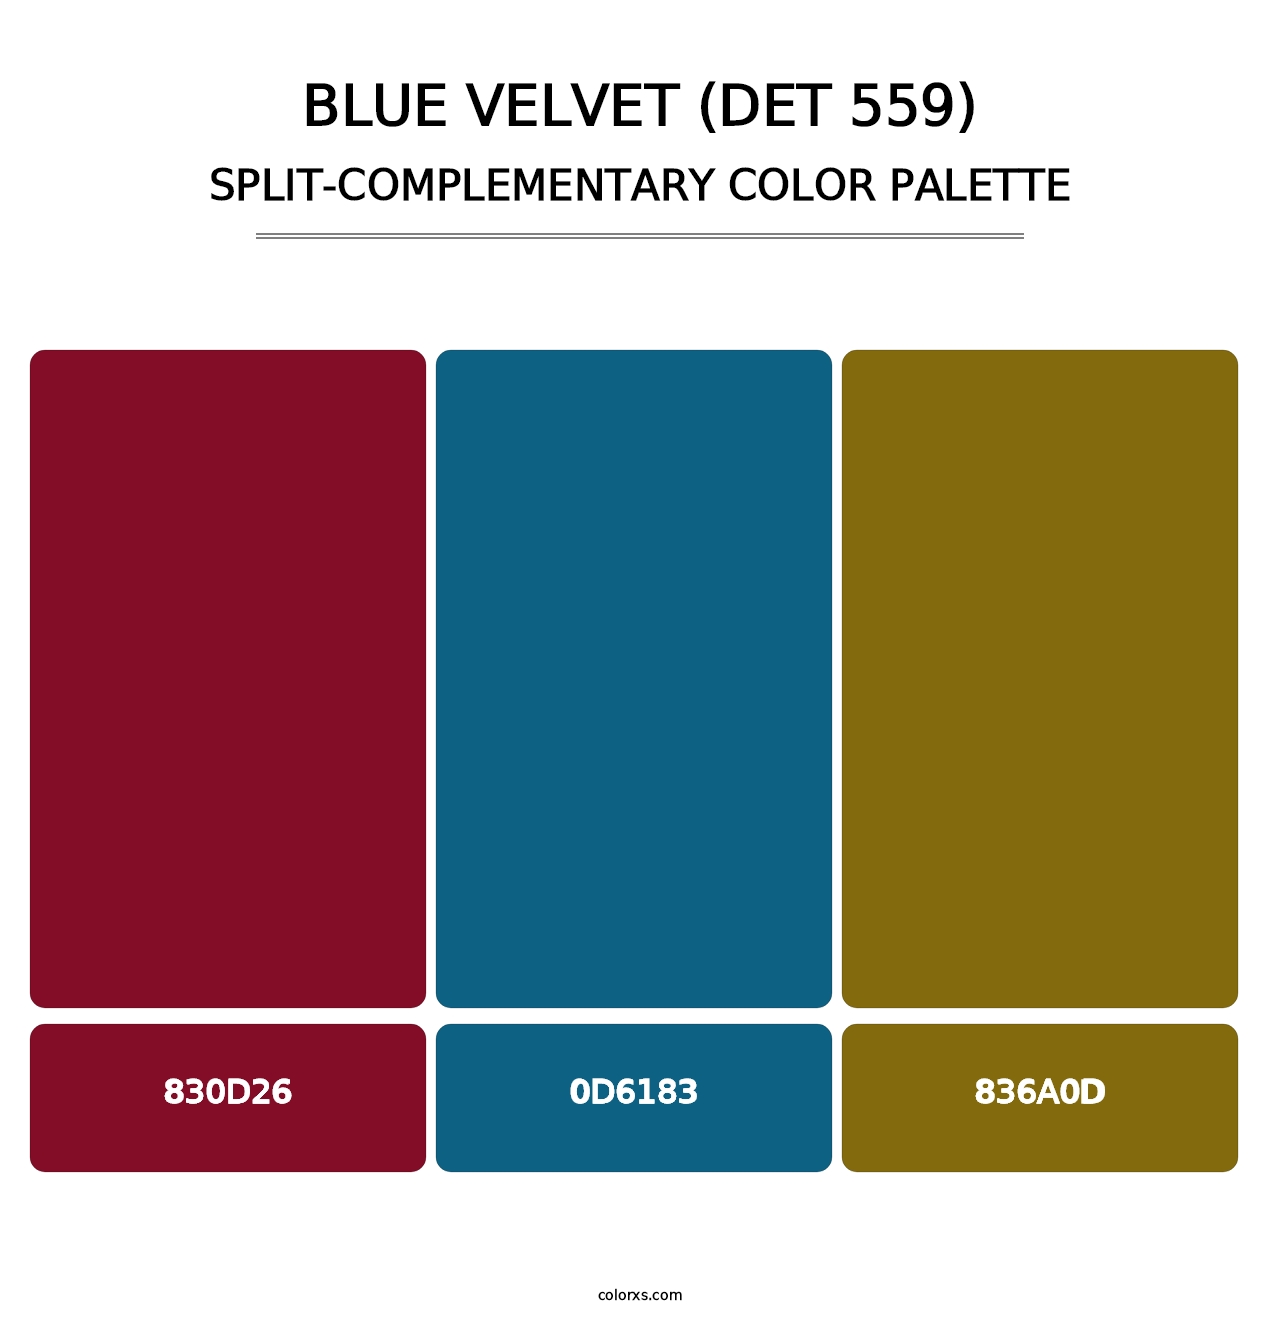 Blue Velvet (DET 559) - Split-Complementary Color Palette